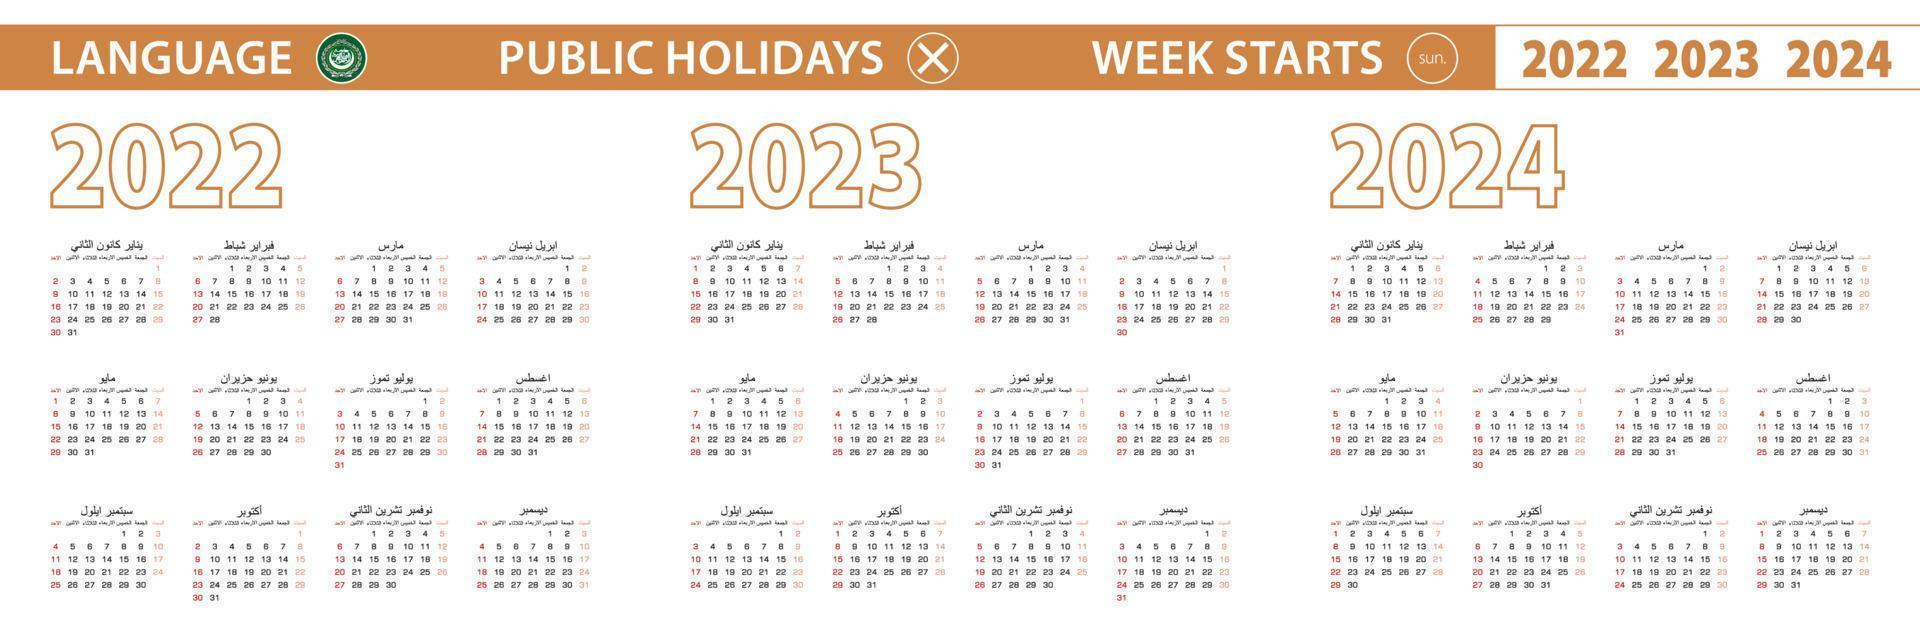 2022, 2023, 2024 Jahr Vektorkalender in arabischer Sprache, Woche beginnt am Sonntag. vektor